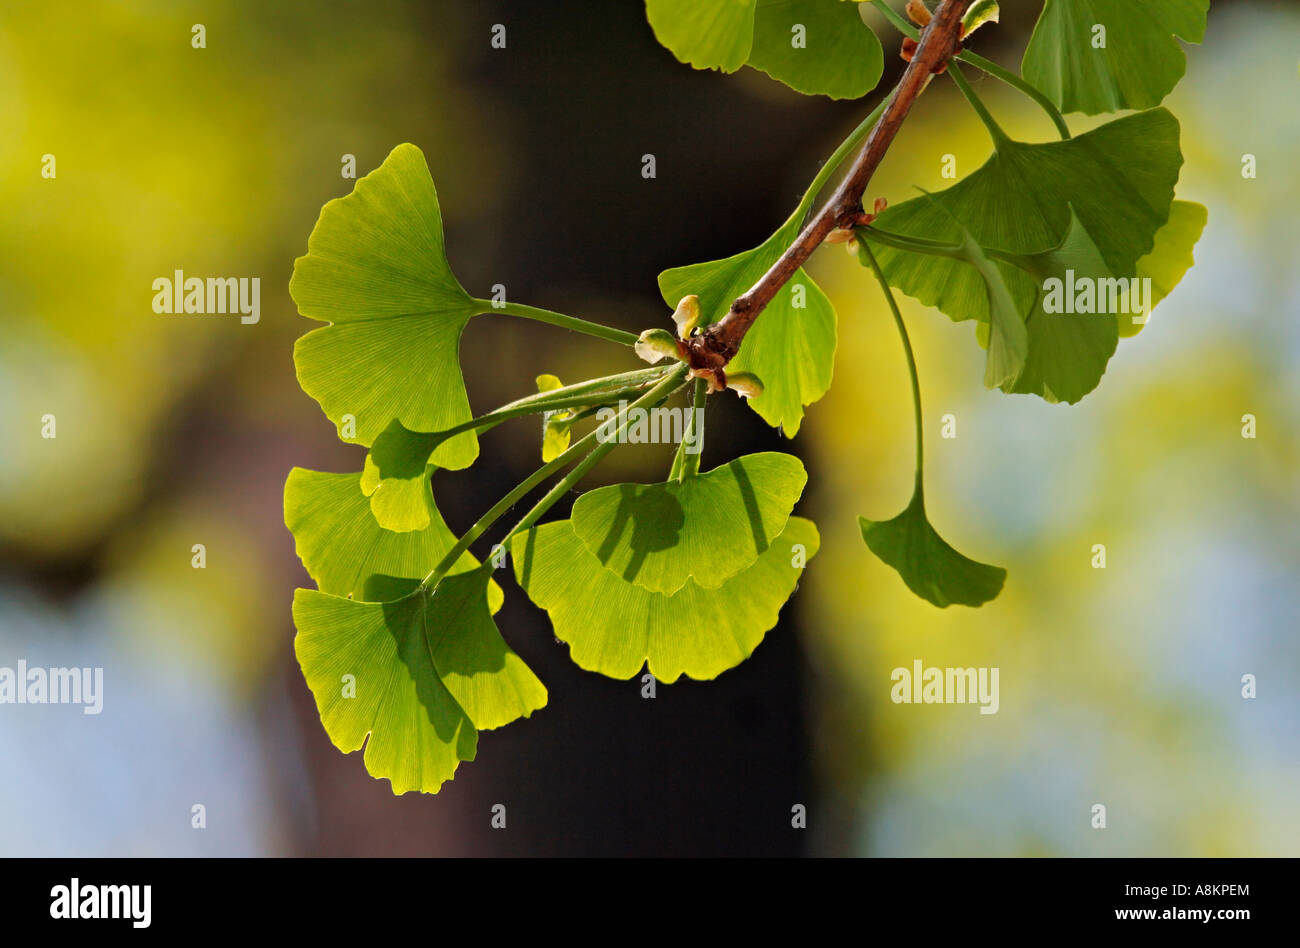 Las hojas jóvenes de un ginkgo (Ginkgo biloba) con luz de fondo Foto de stock